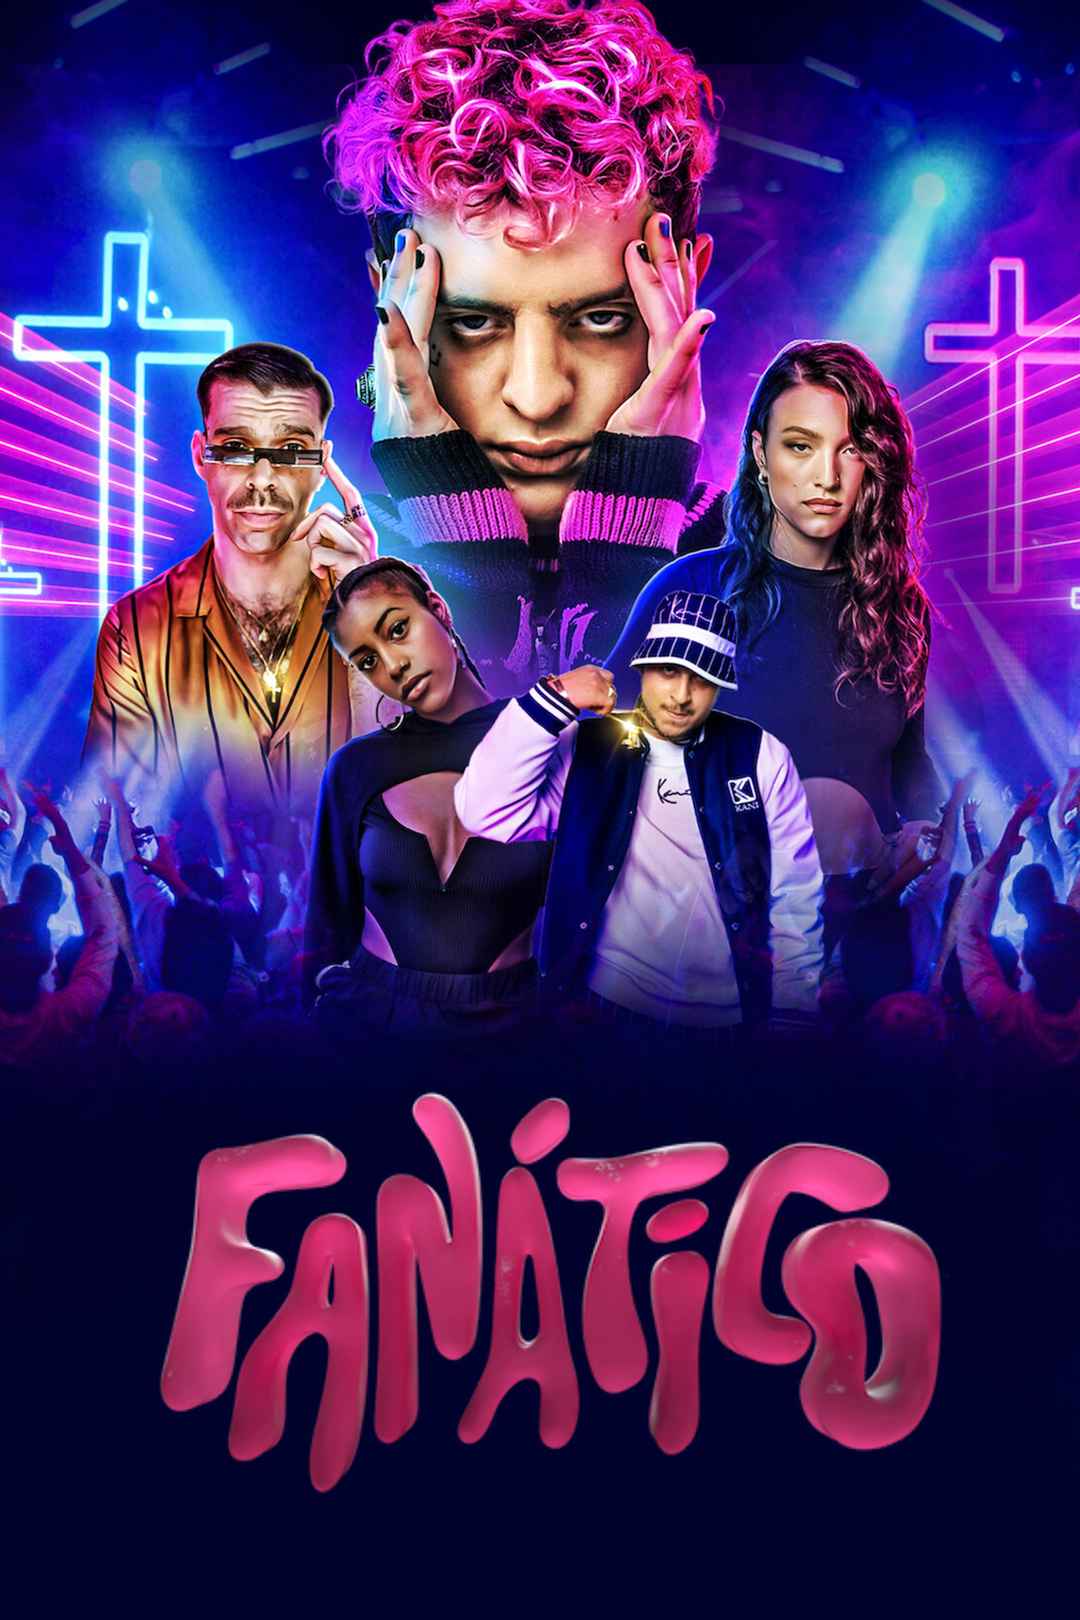 Fanatico Season 1 (Complete) [TV Series]